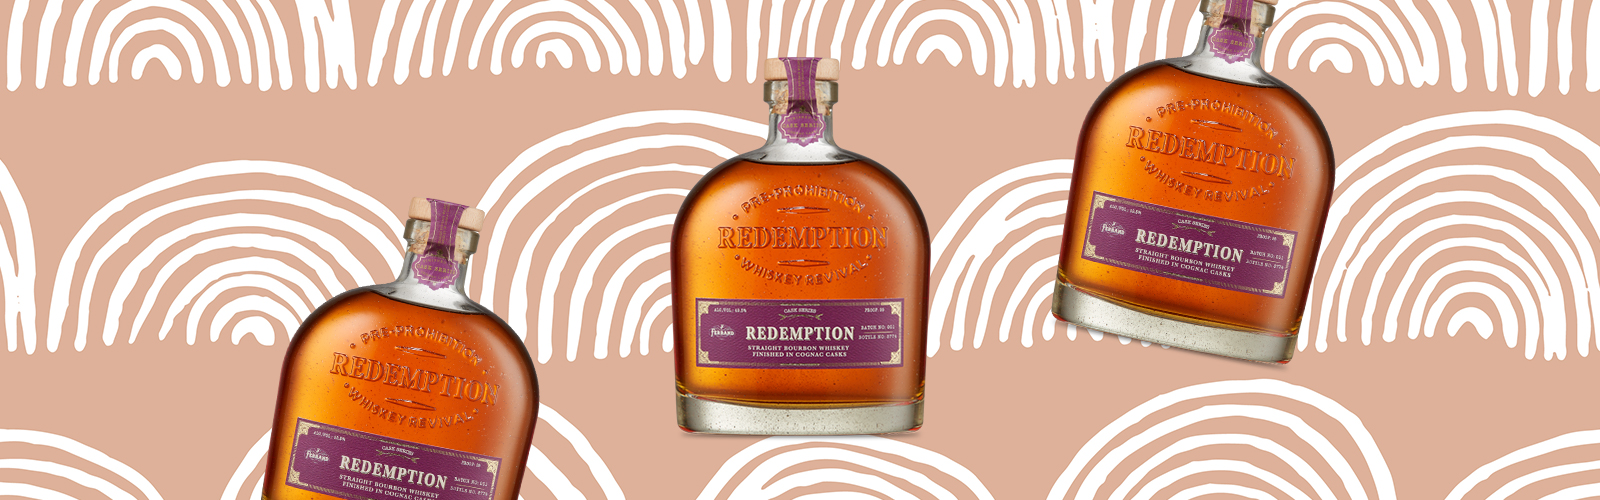 Redemption Cognac Cask